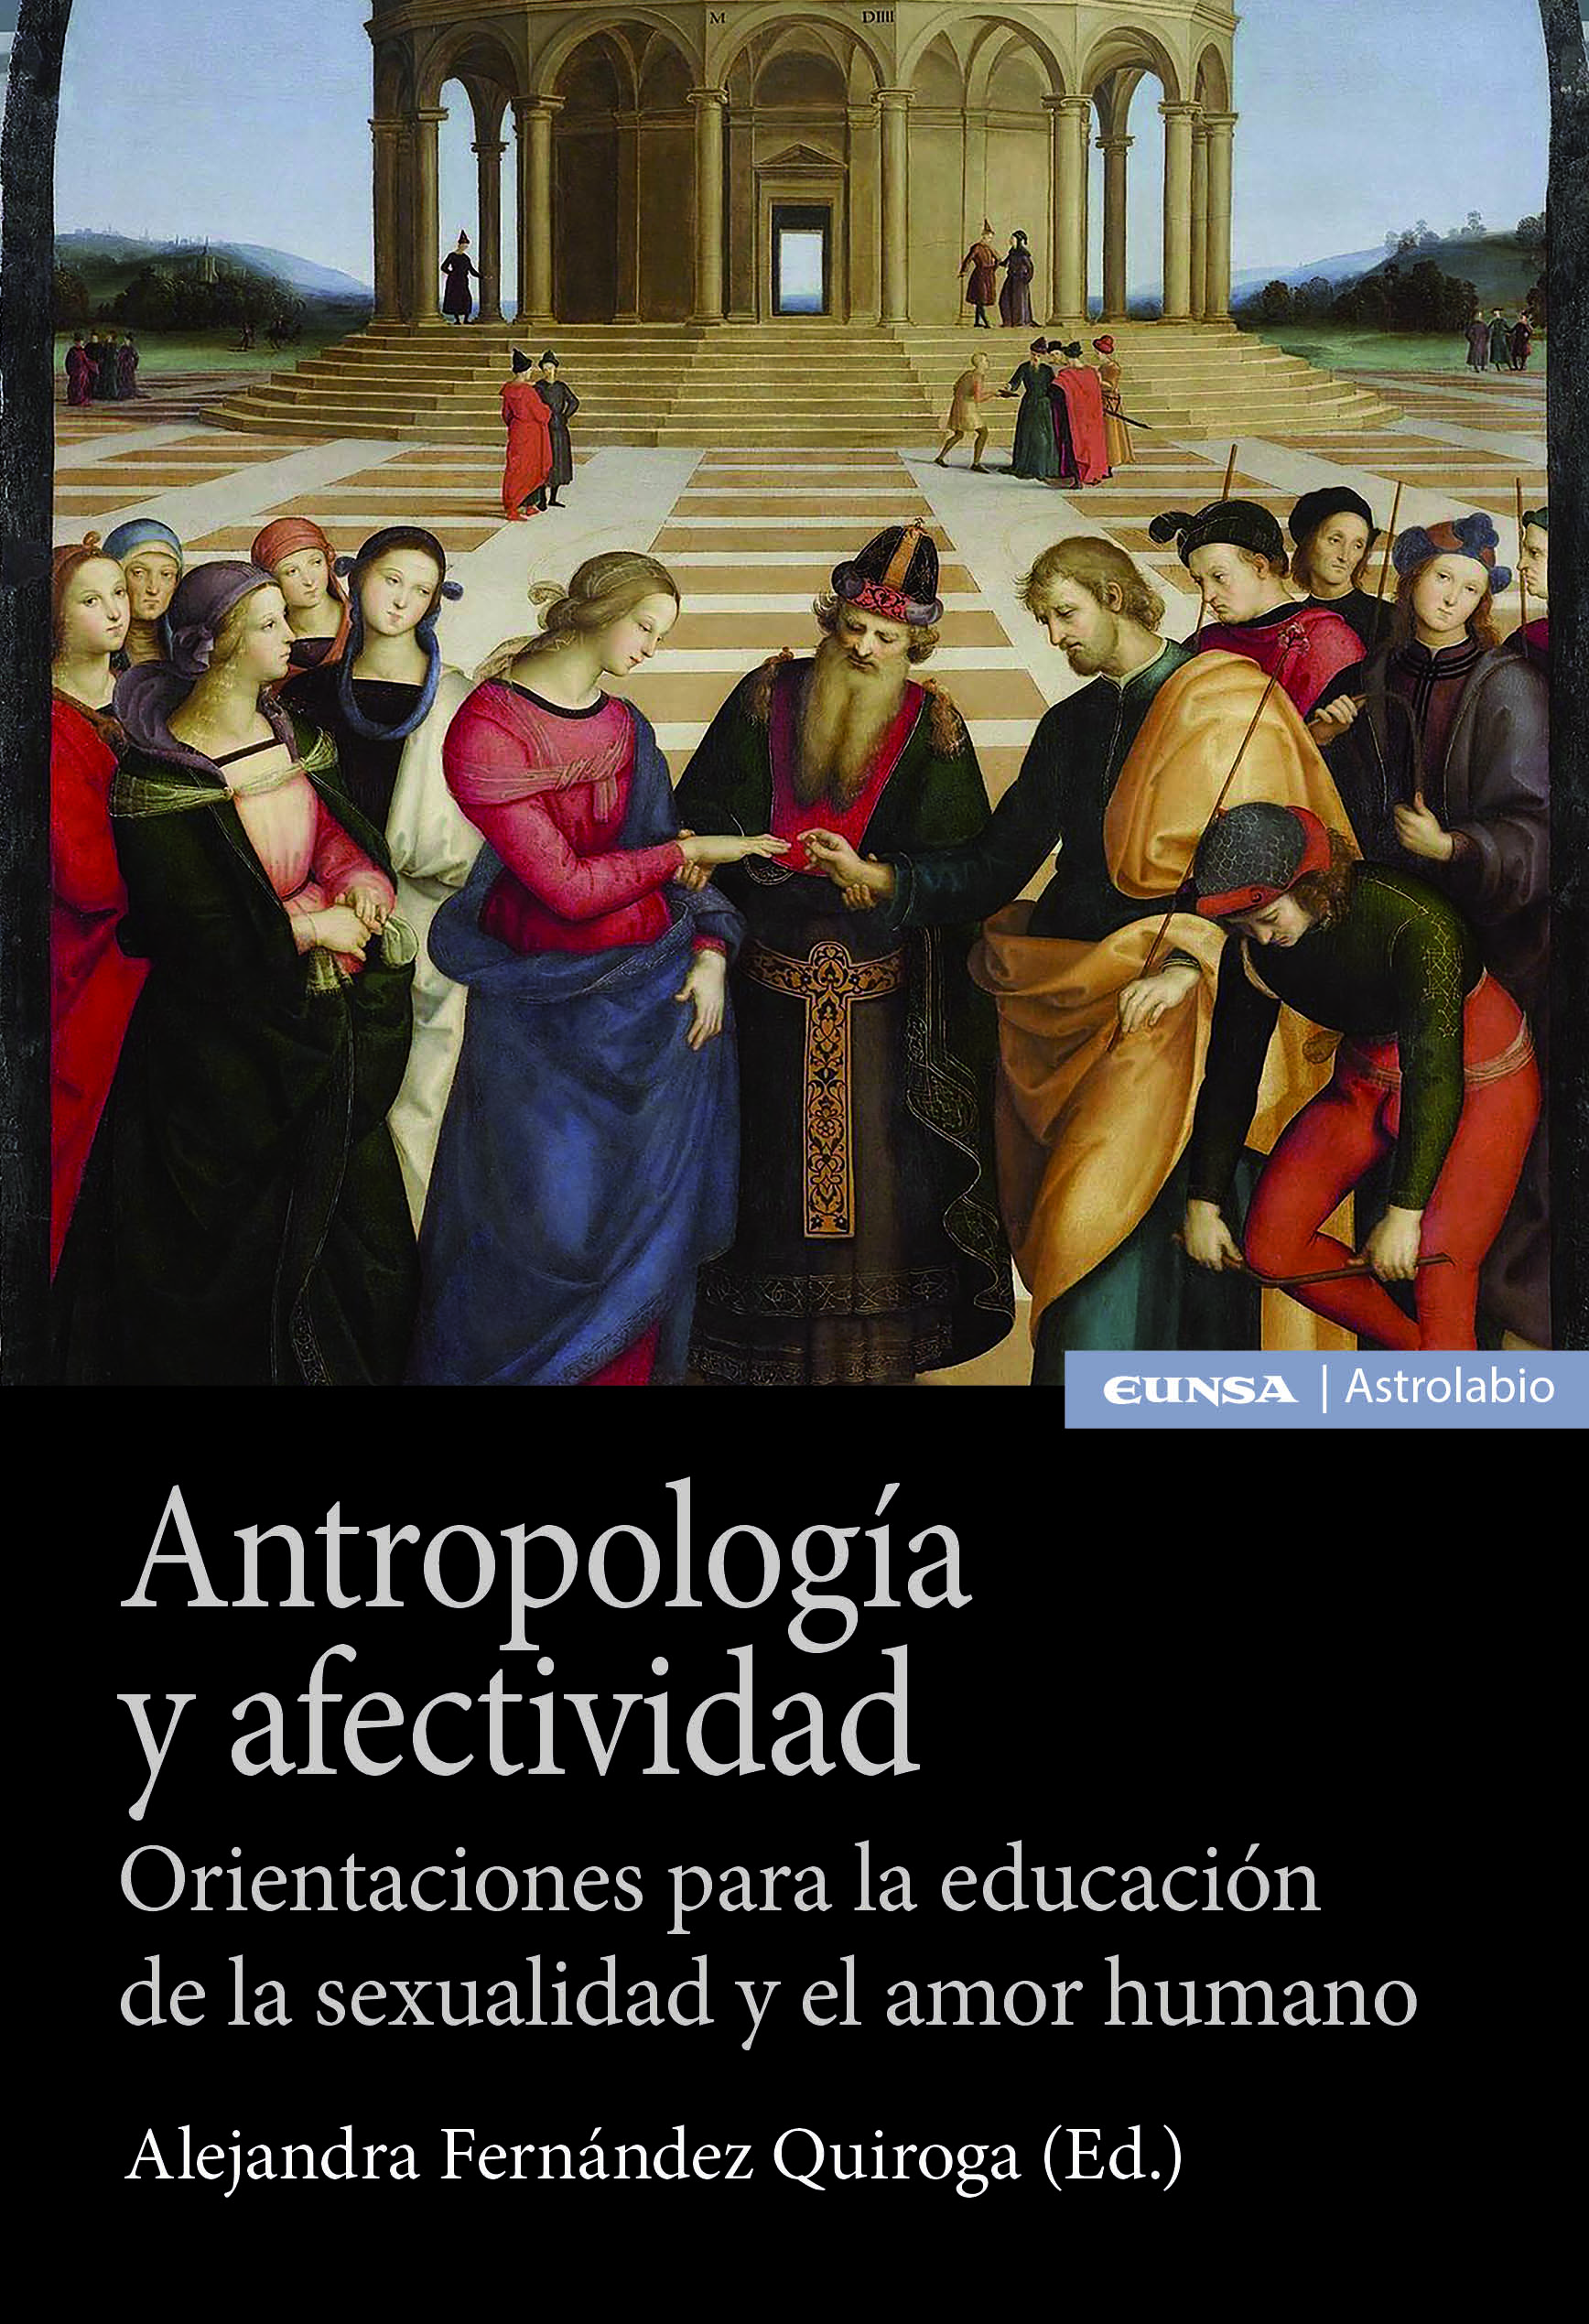 Antropología y afectividad